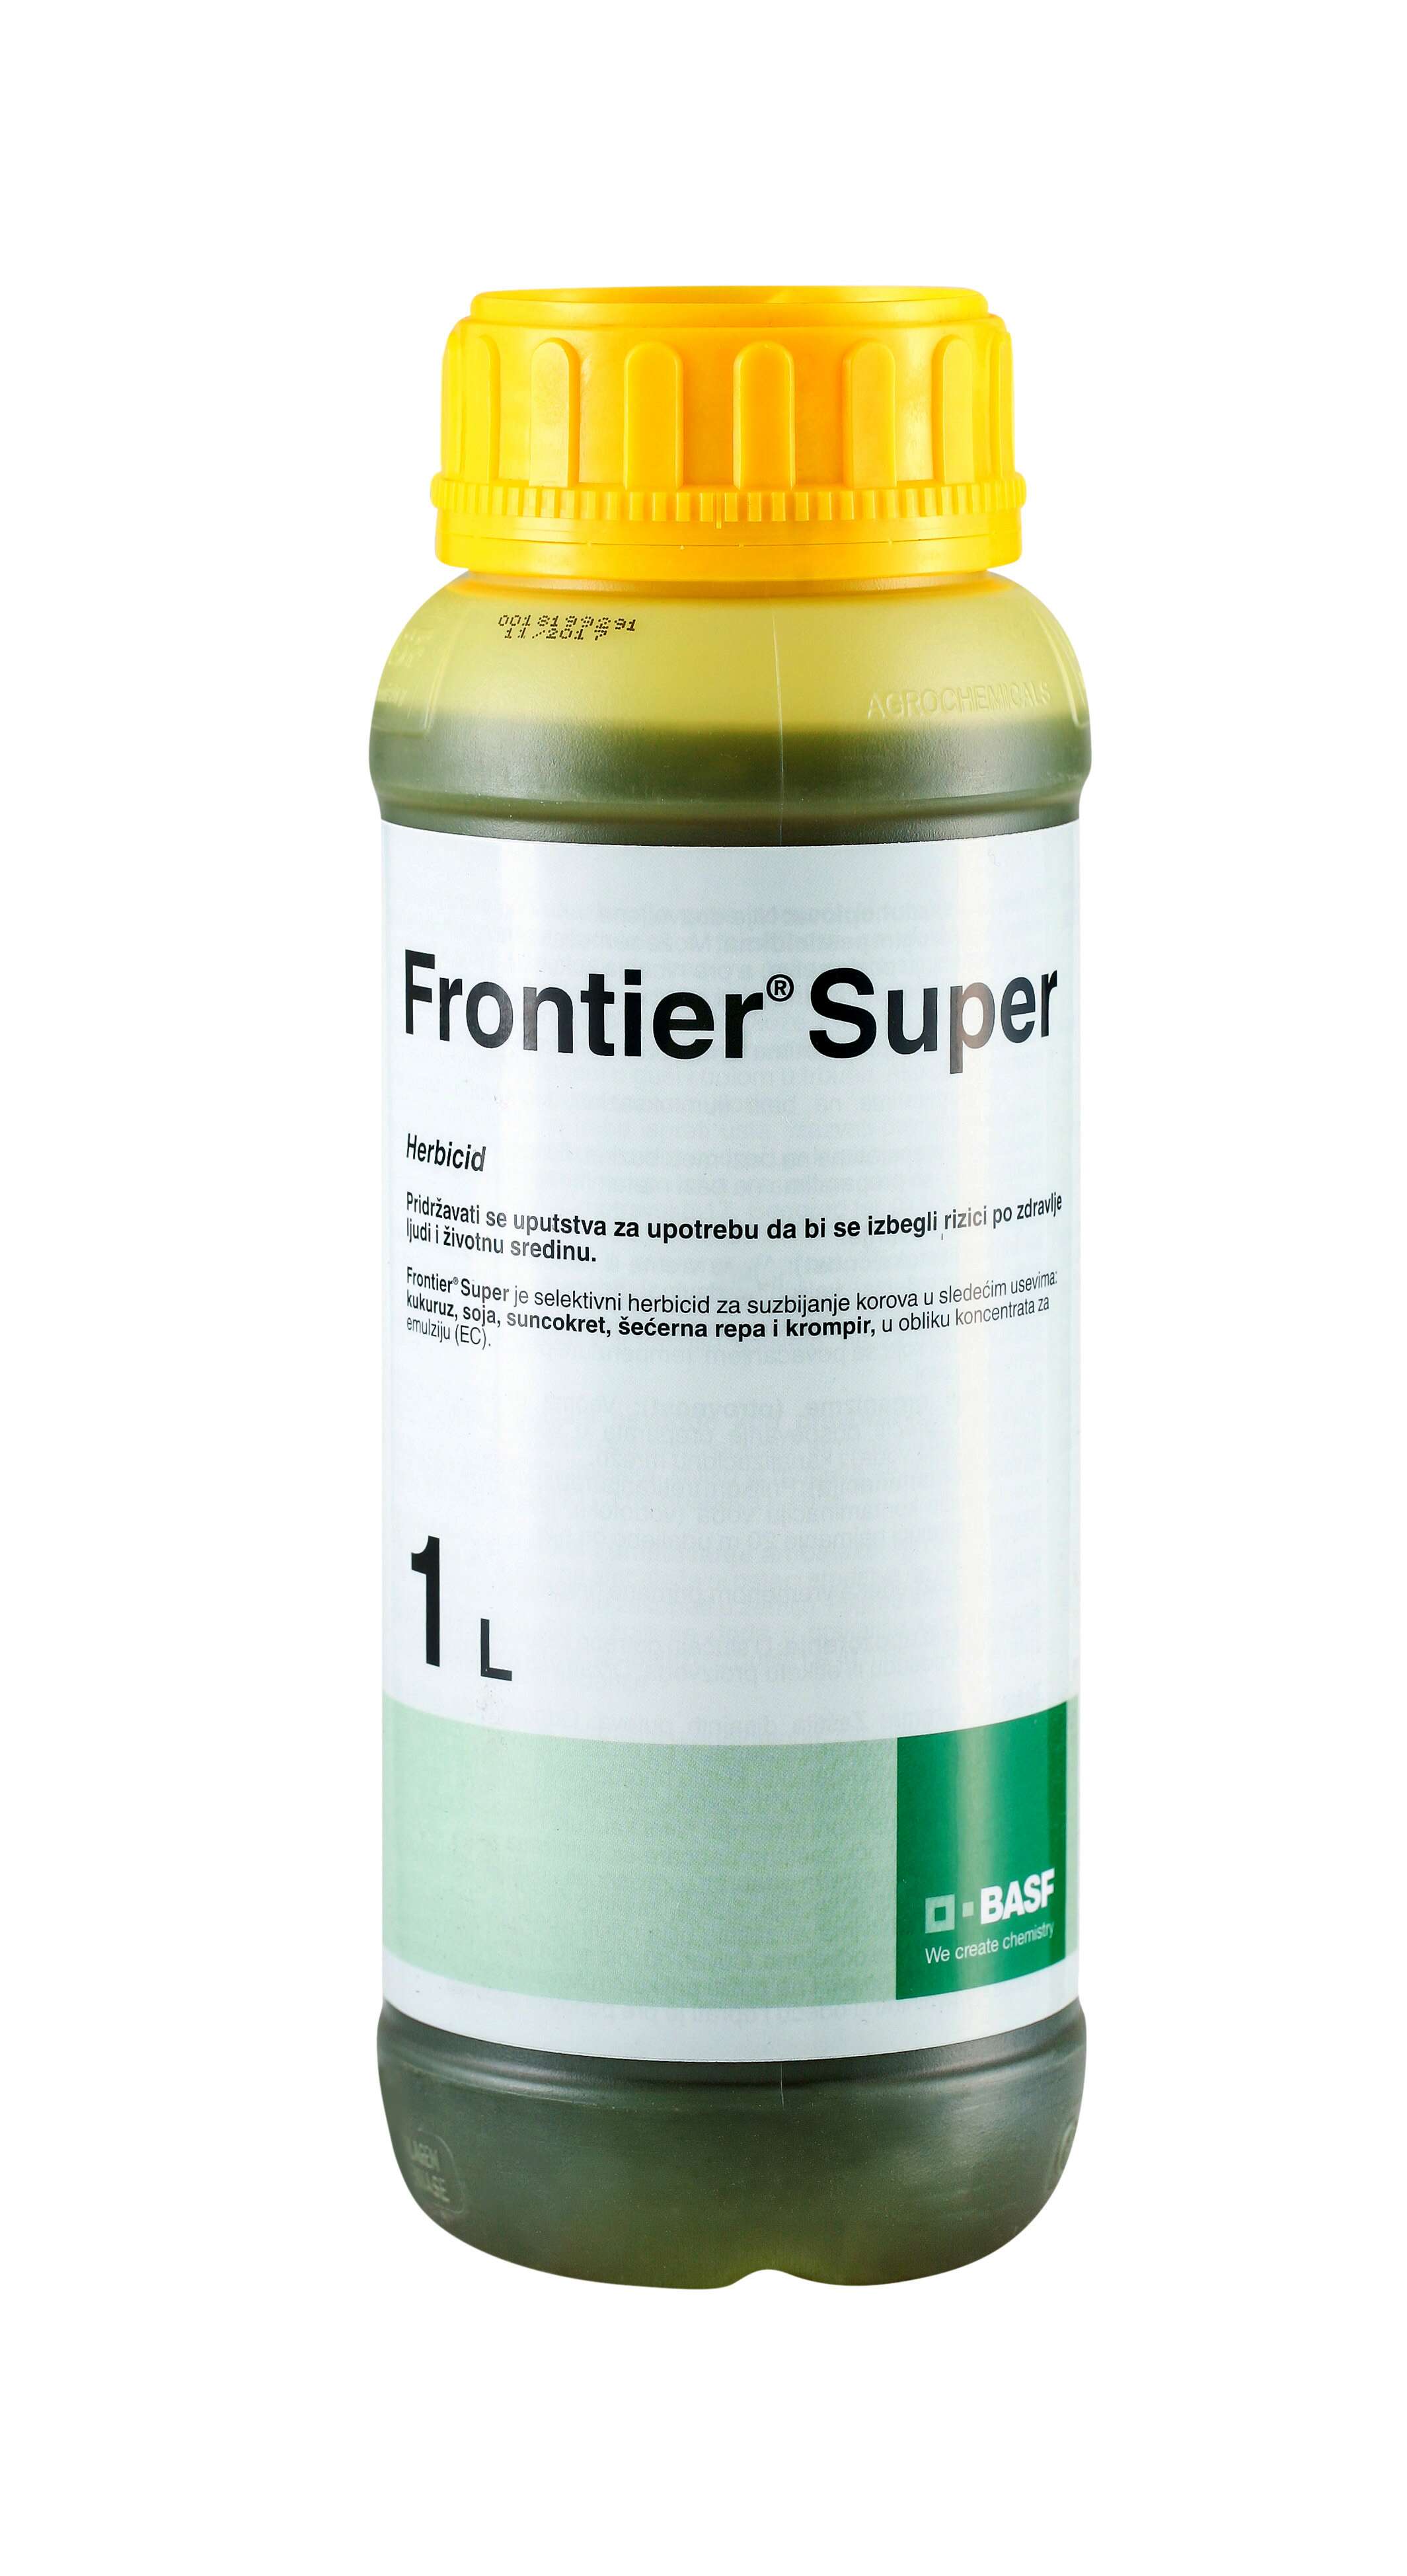 Frontier super